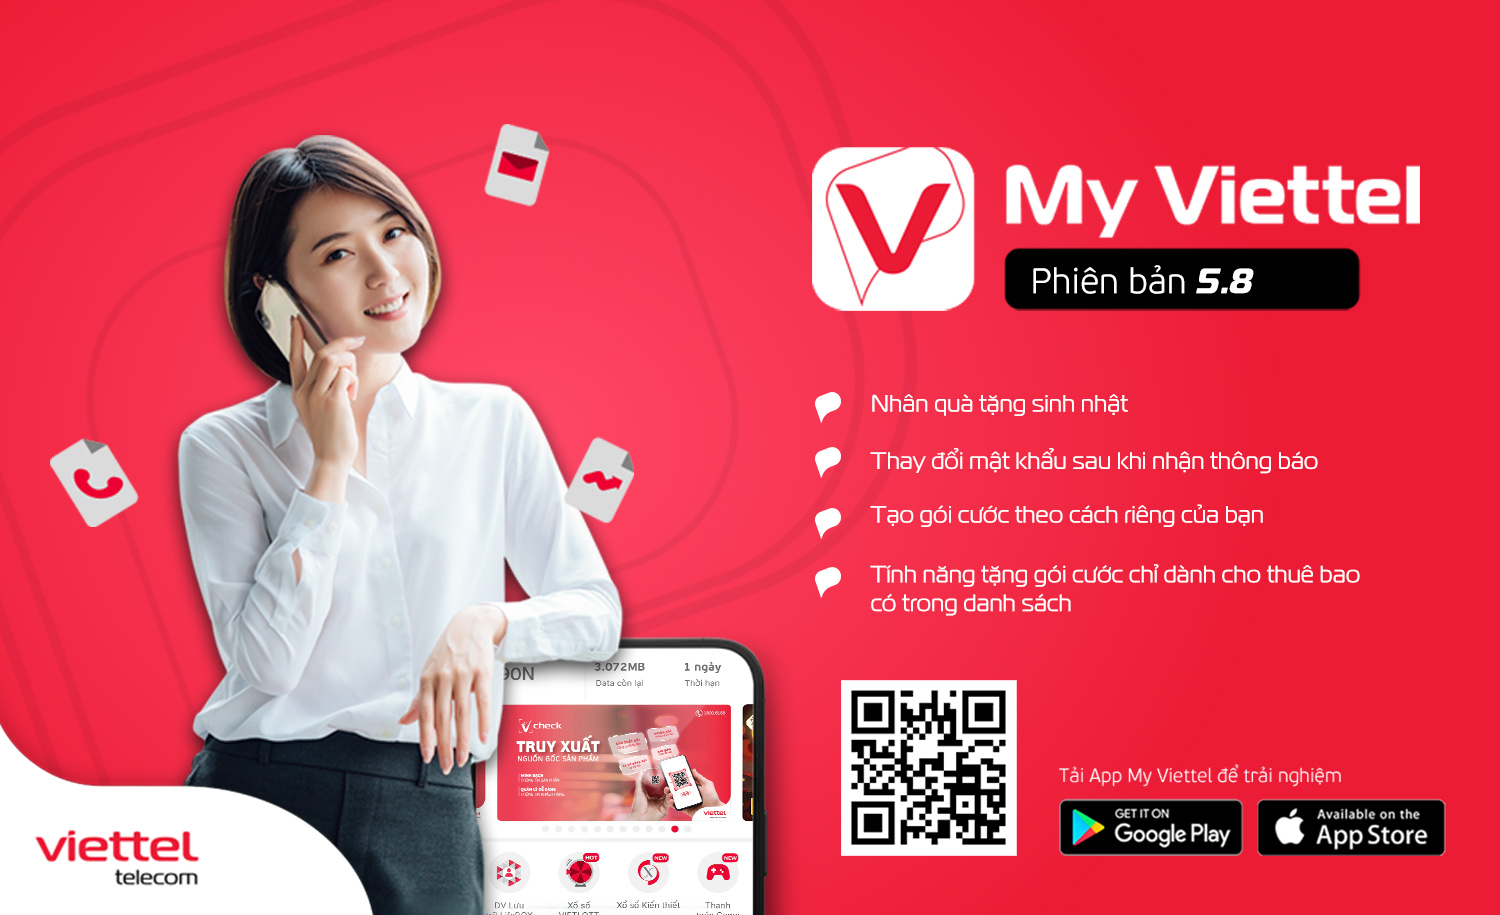 Viettel đạt mức tăng trưởng cao nhất trong vòng 4 năm qua  Công nghệ   Vietnam VietnamPlus